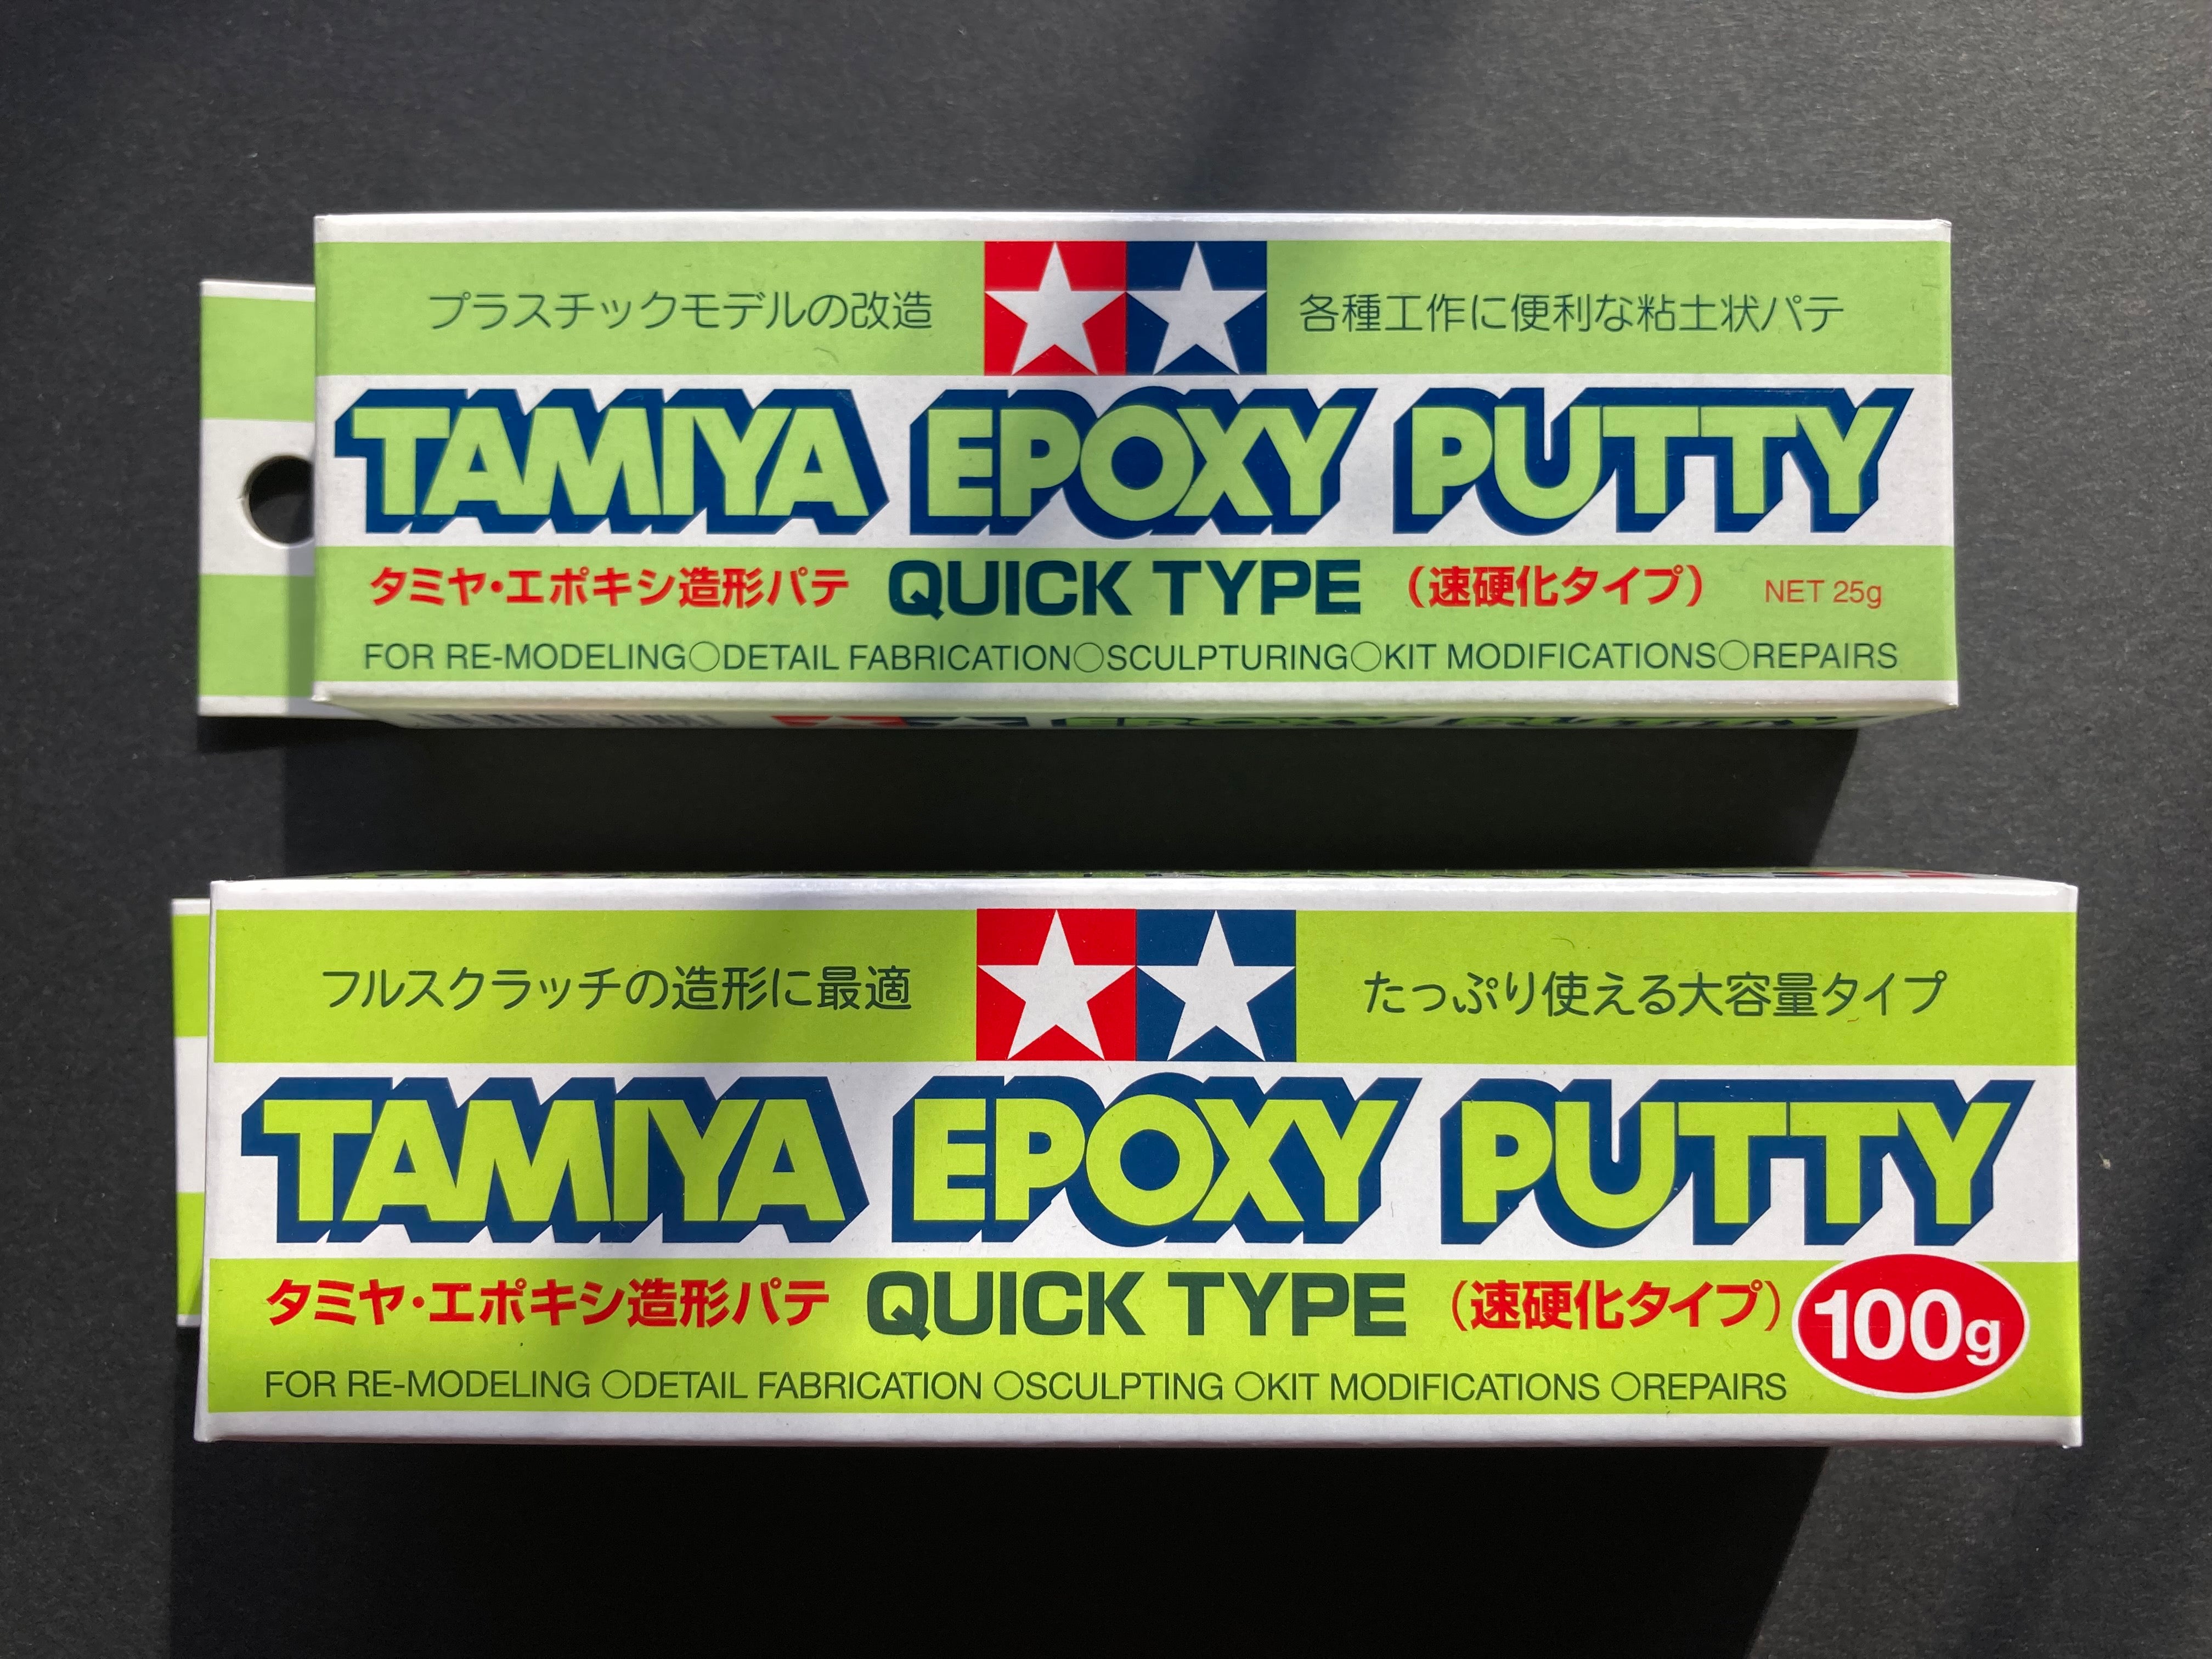 TAMIYA EPOXY PUTTY (QUICK TYPE) 